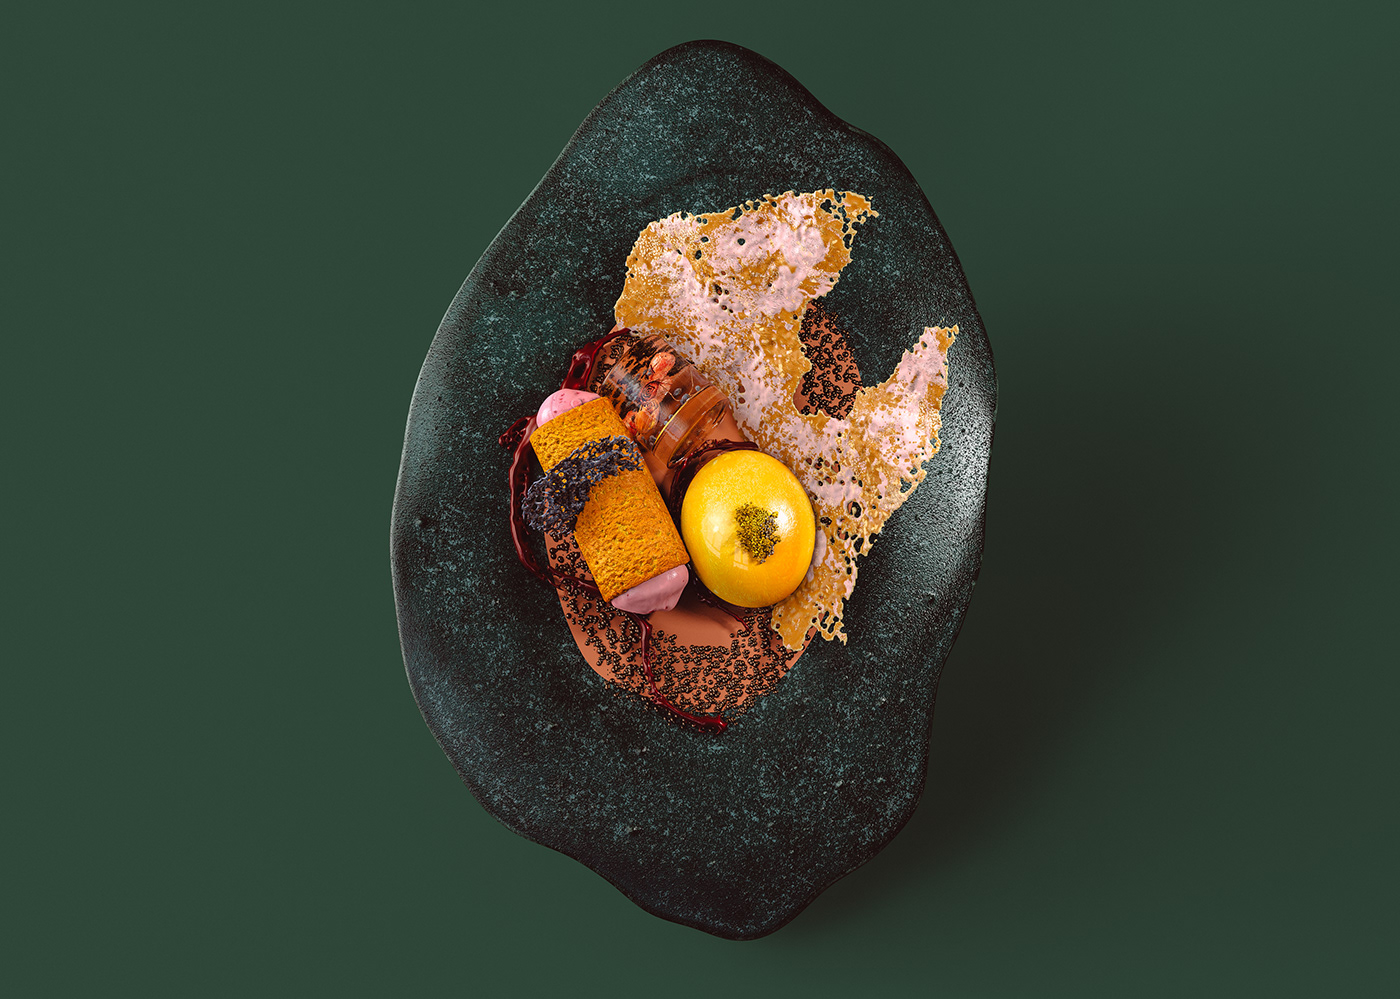 3D avant-garde colors cousine design gastronomic ILLUSTRATION  knowledge textures visual